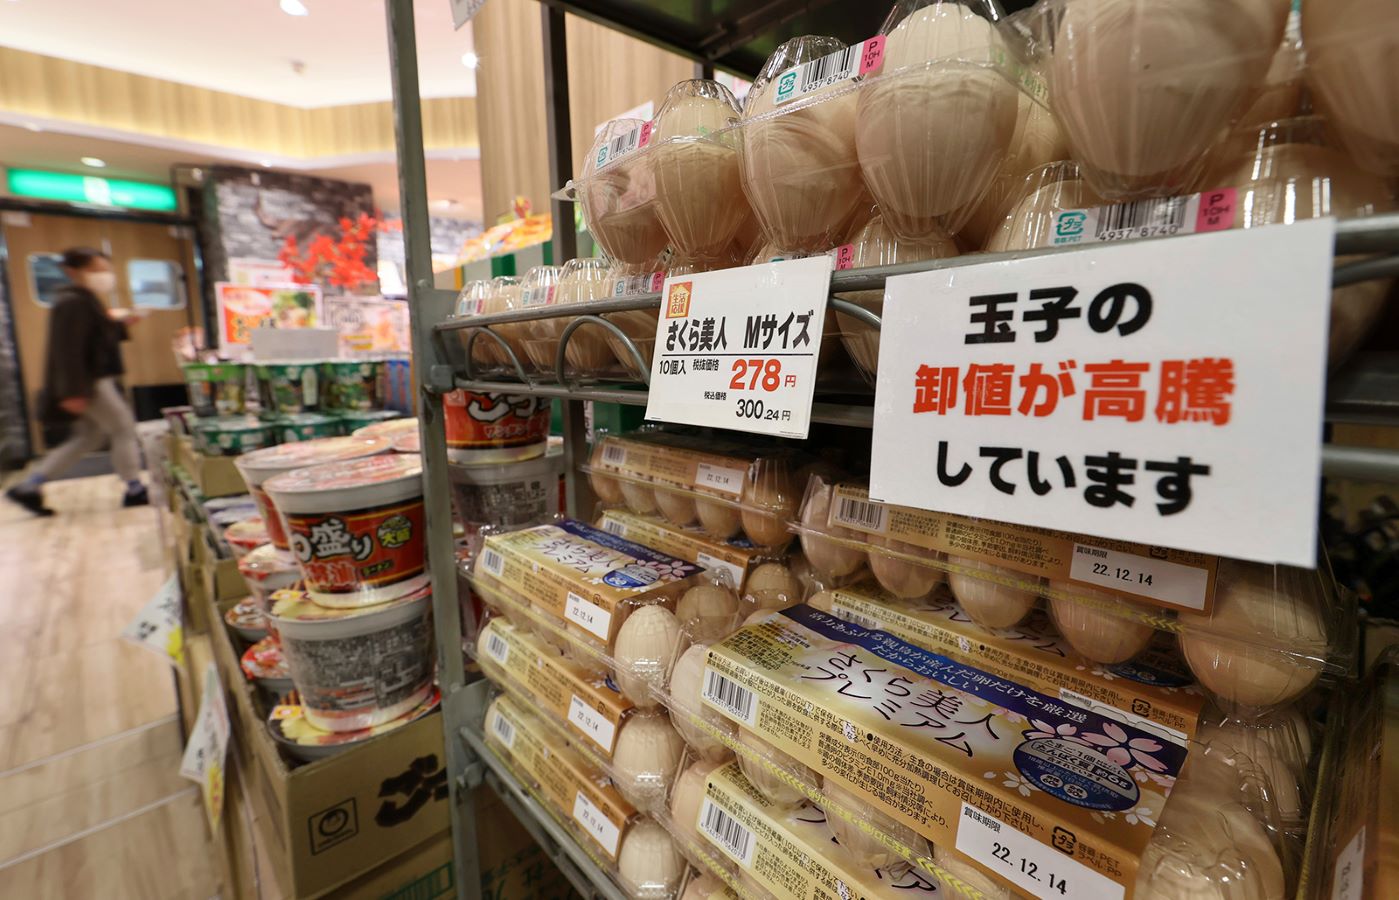 ارتفاع أسعار البيض في اليابان بعد إعدام 16 مليون طائر